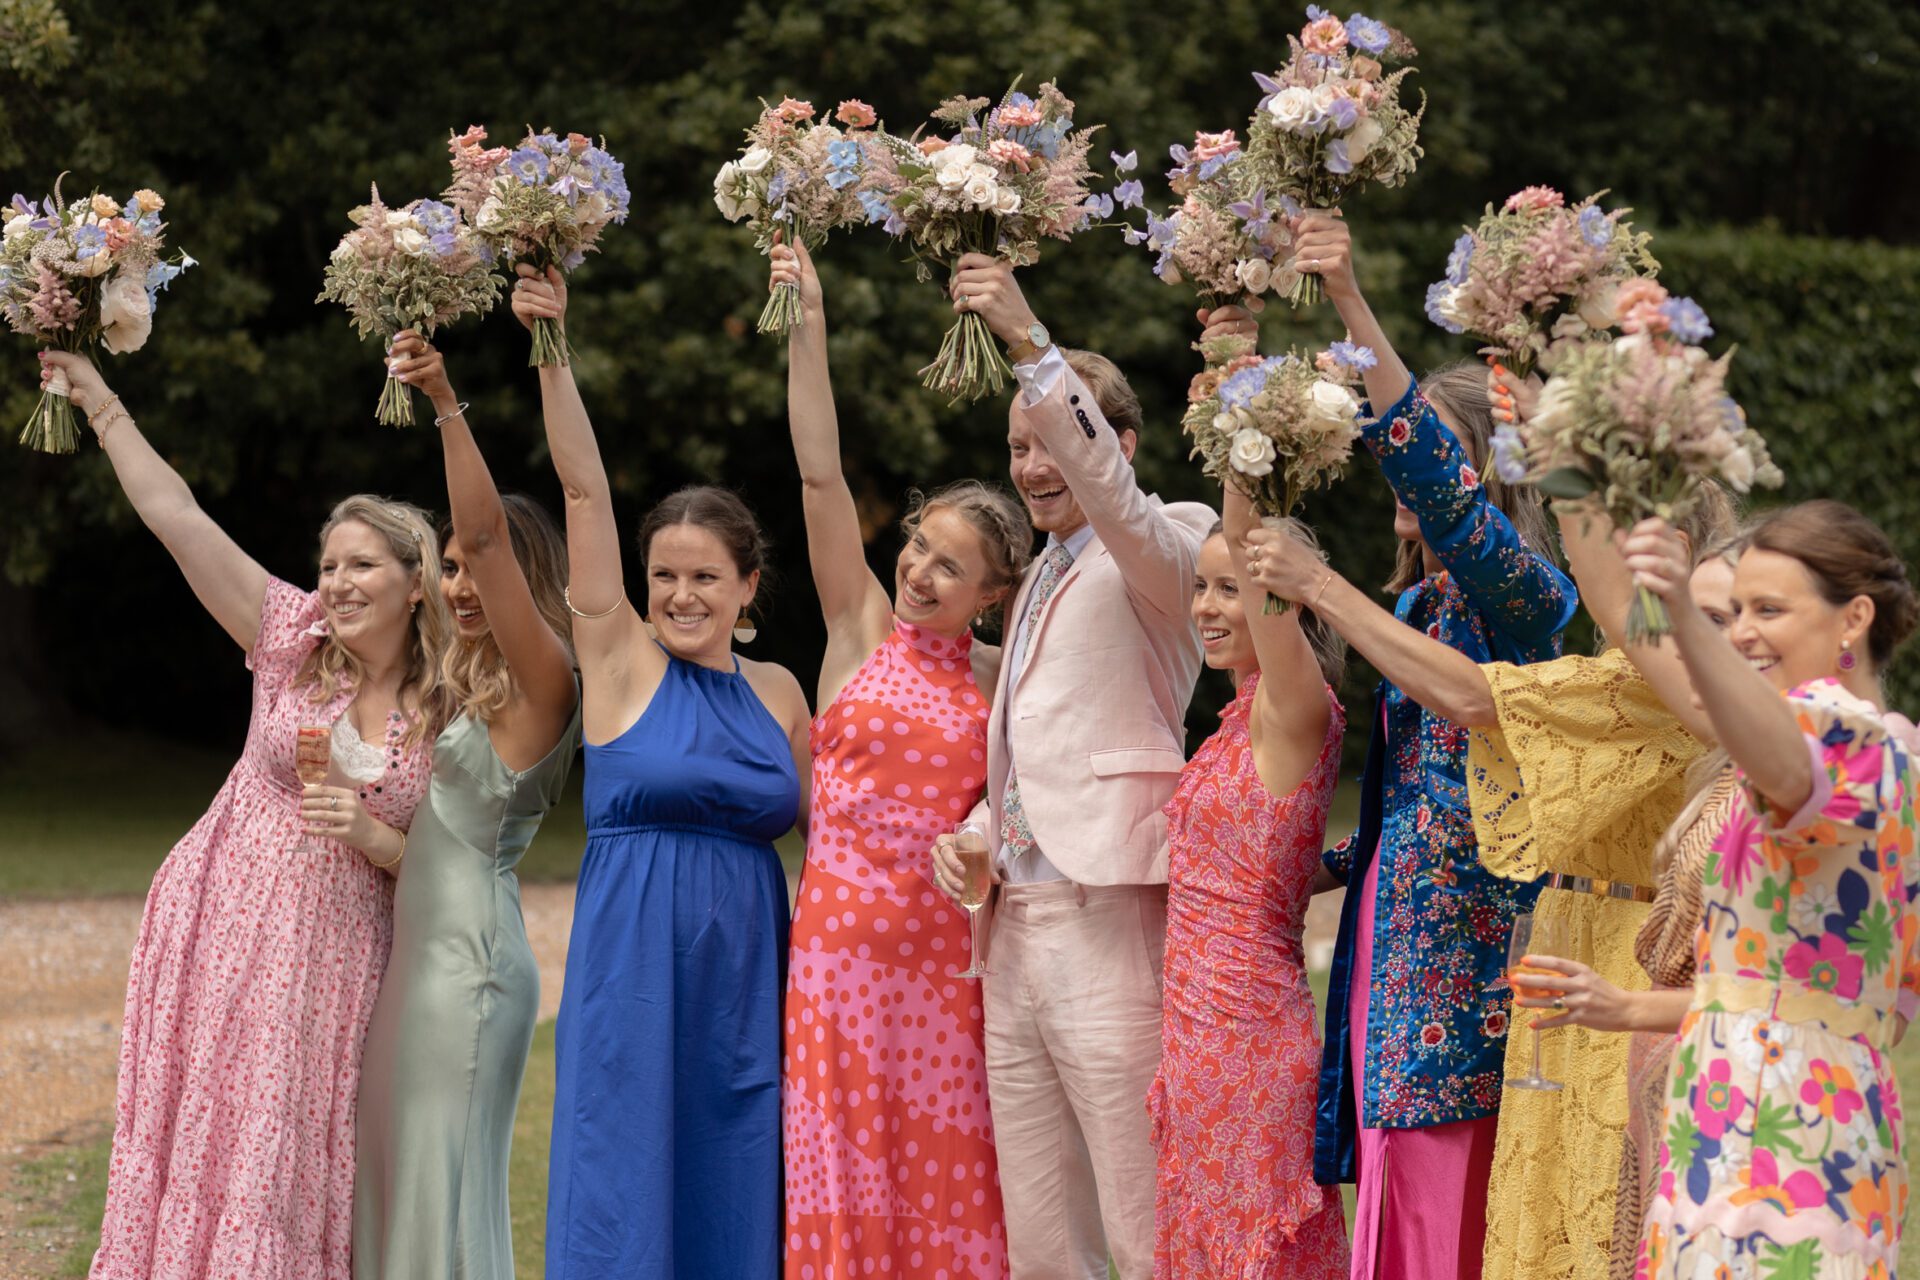 Bridal party group shot at Kent wedding venue, Brickwall House